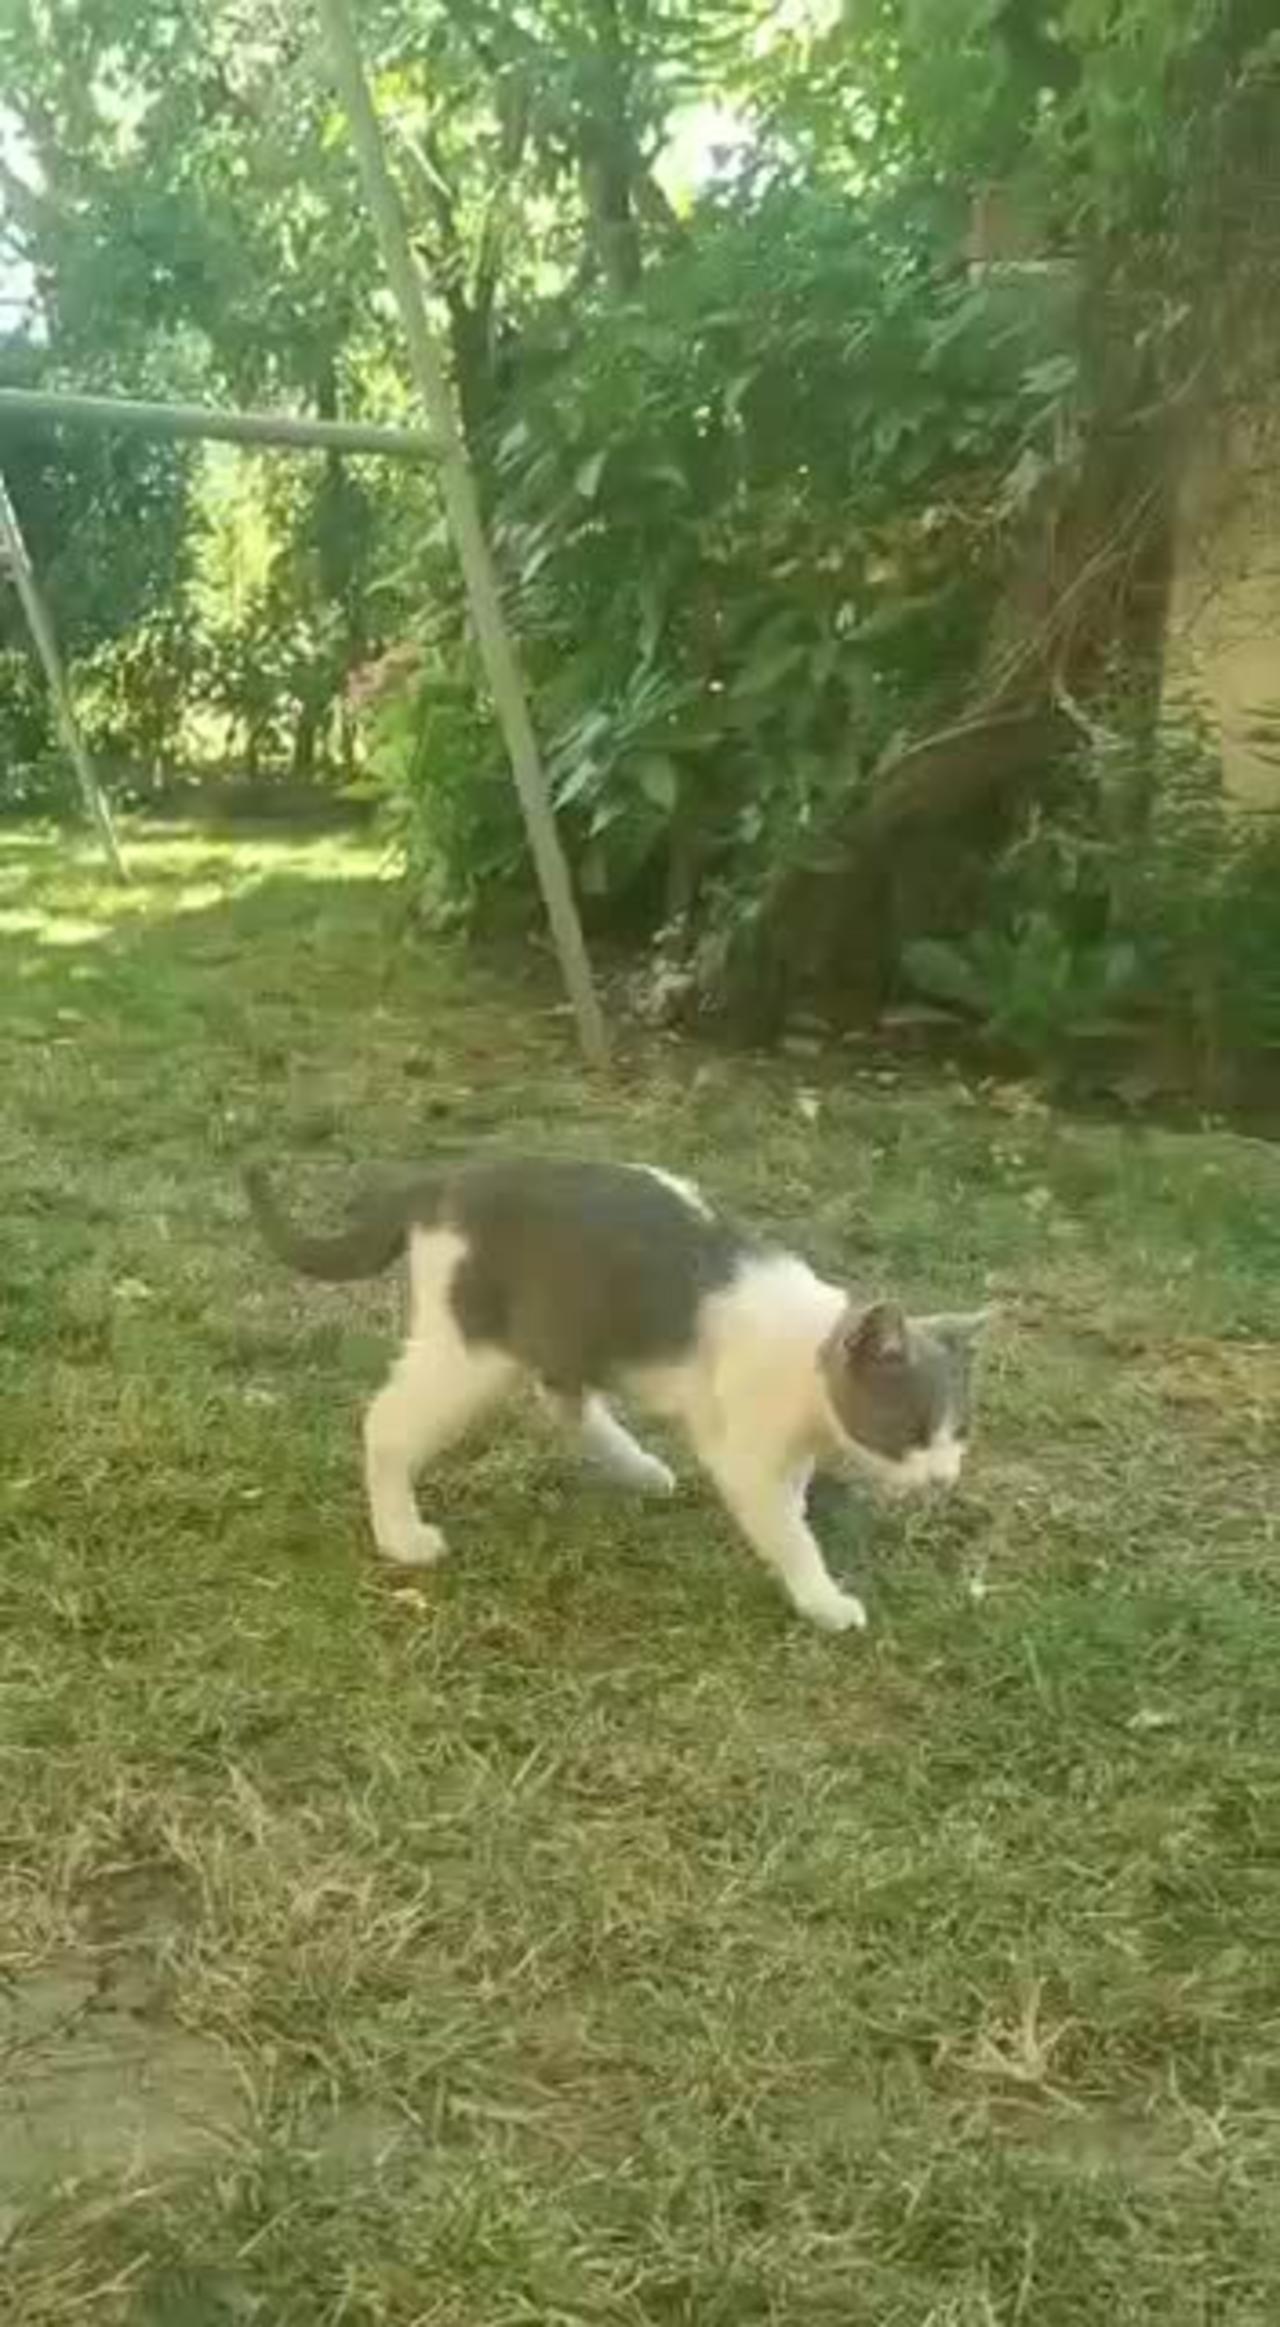 Cute kitten plays in garden